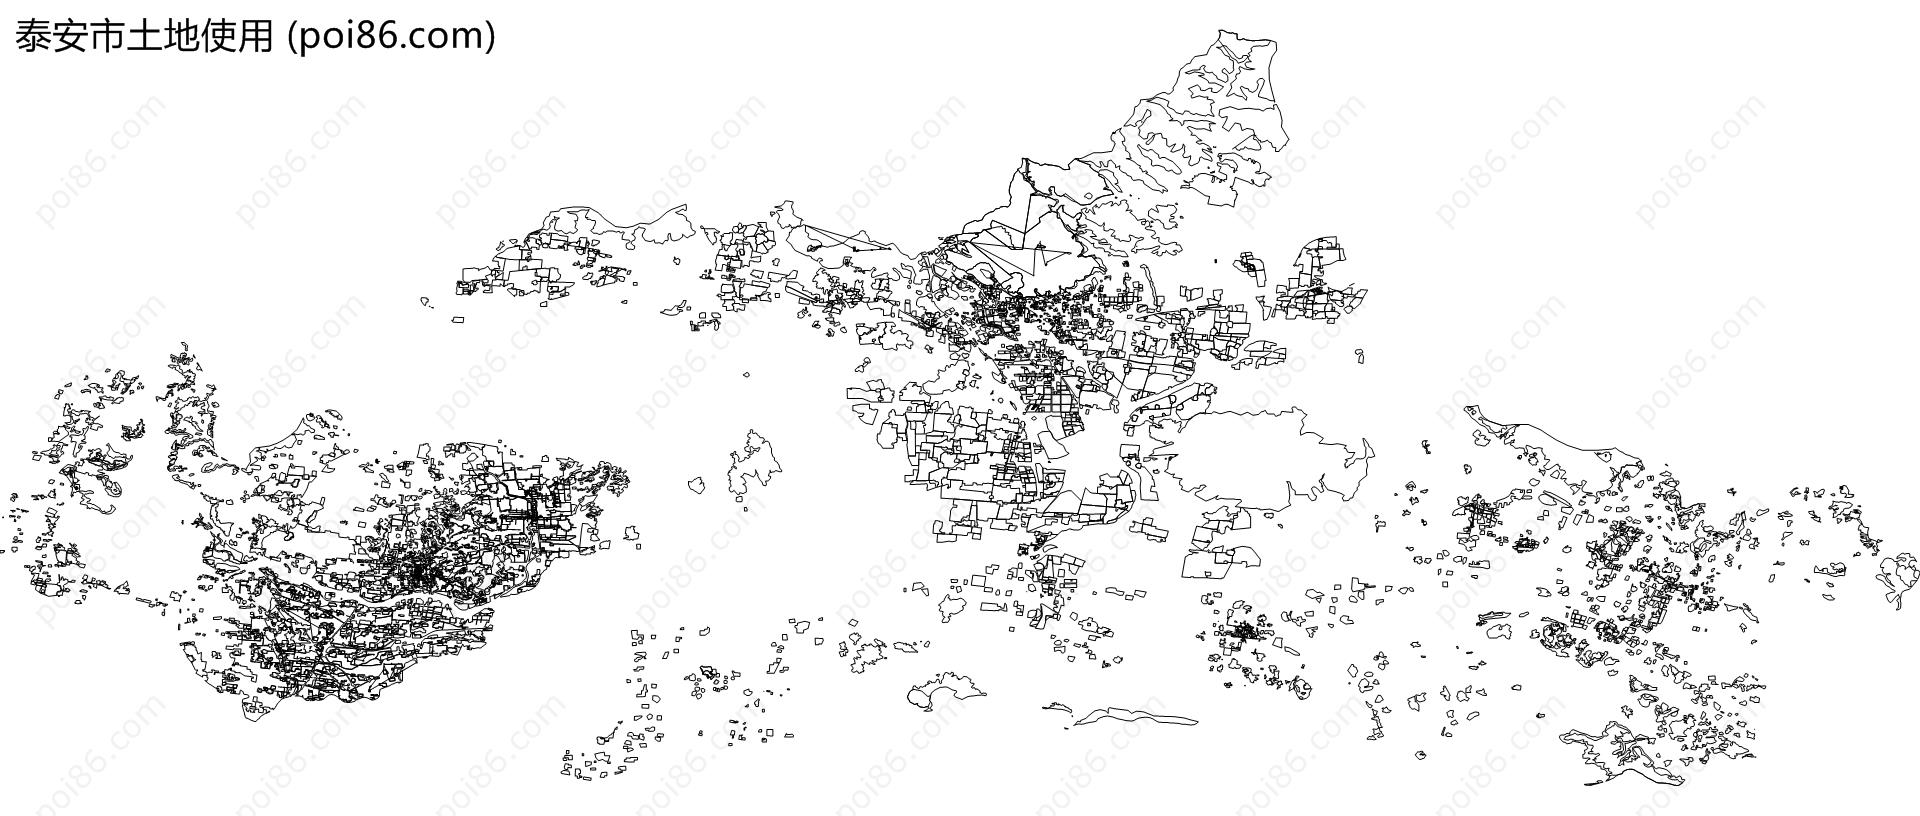 泰安市土地使用地图